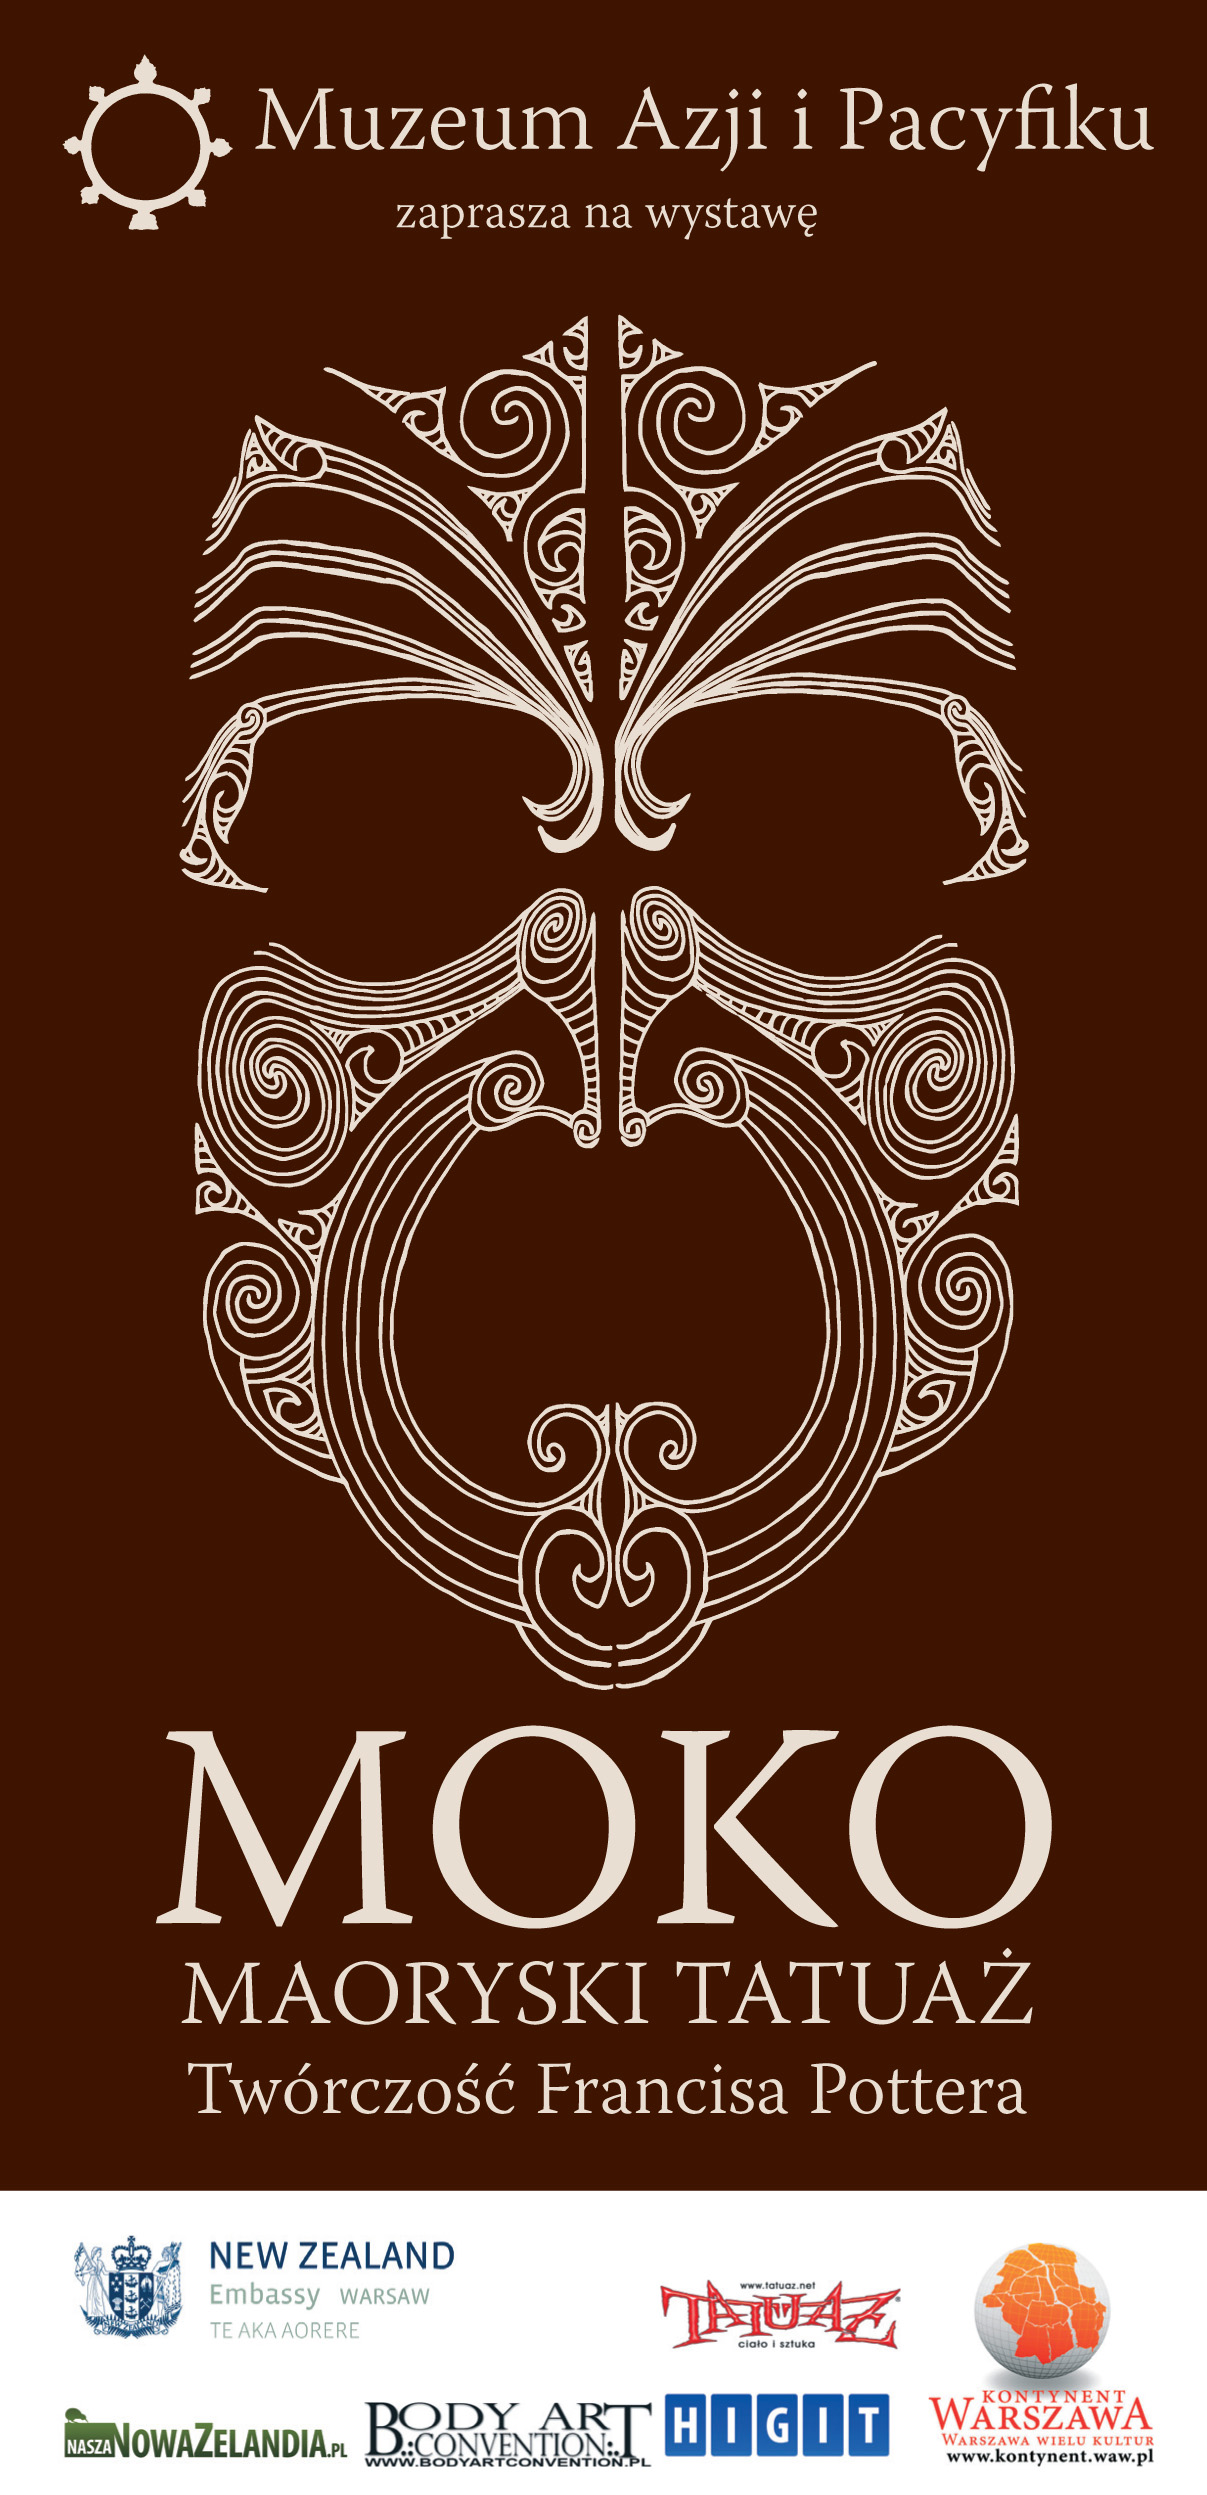 Nowa Zelandia zdjęcie: Moko - Maoryski tatuaż w Warszawie